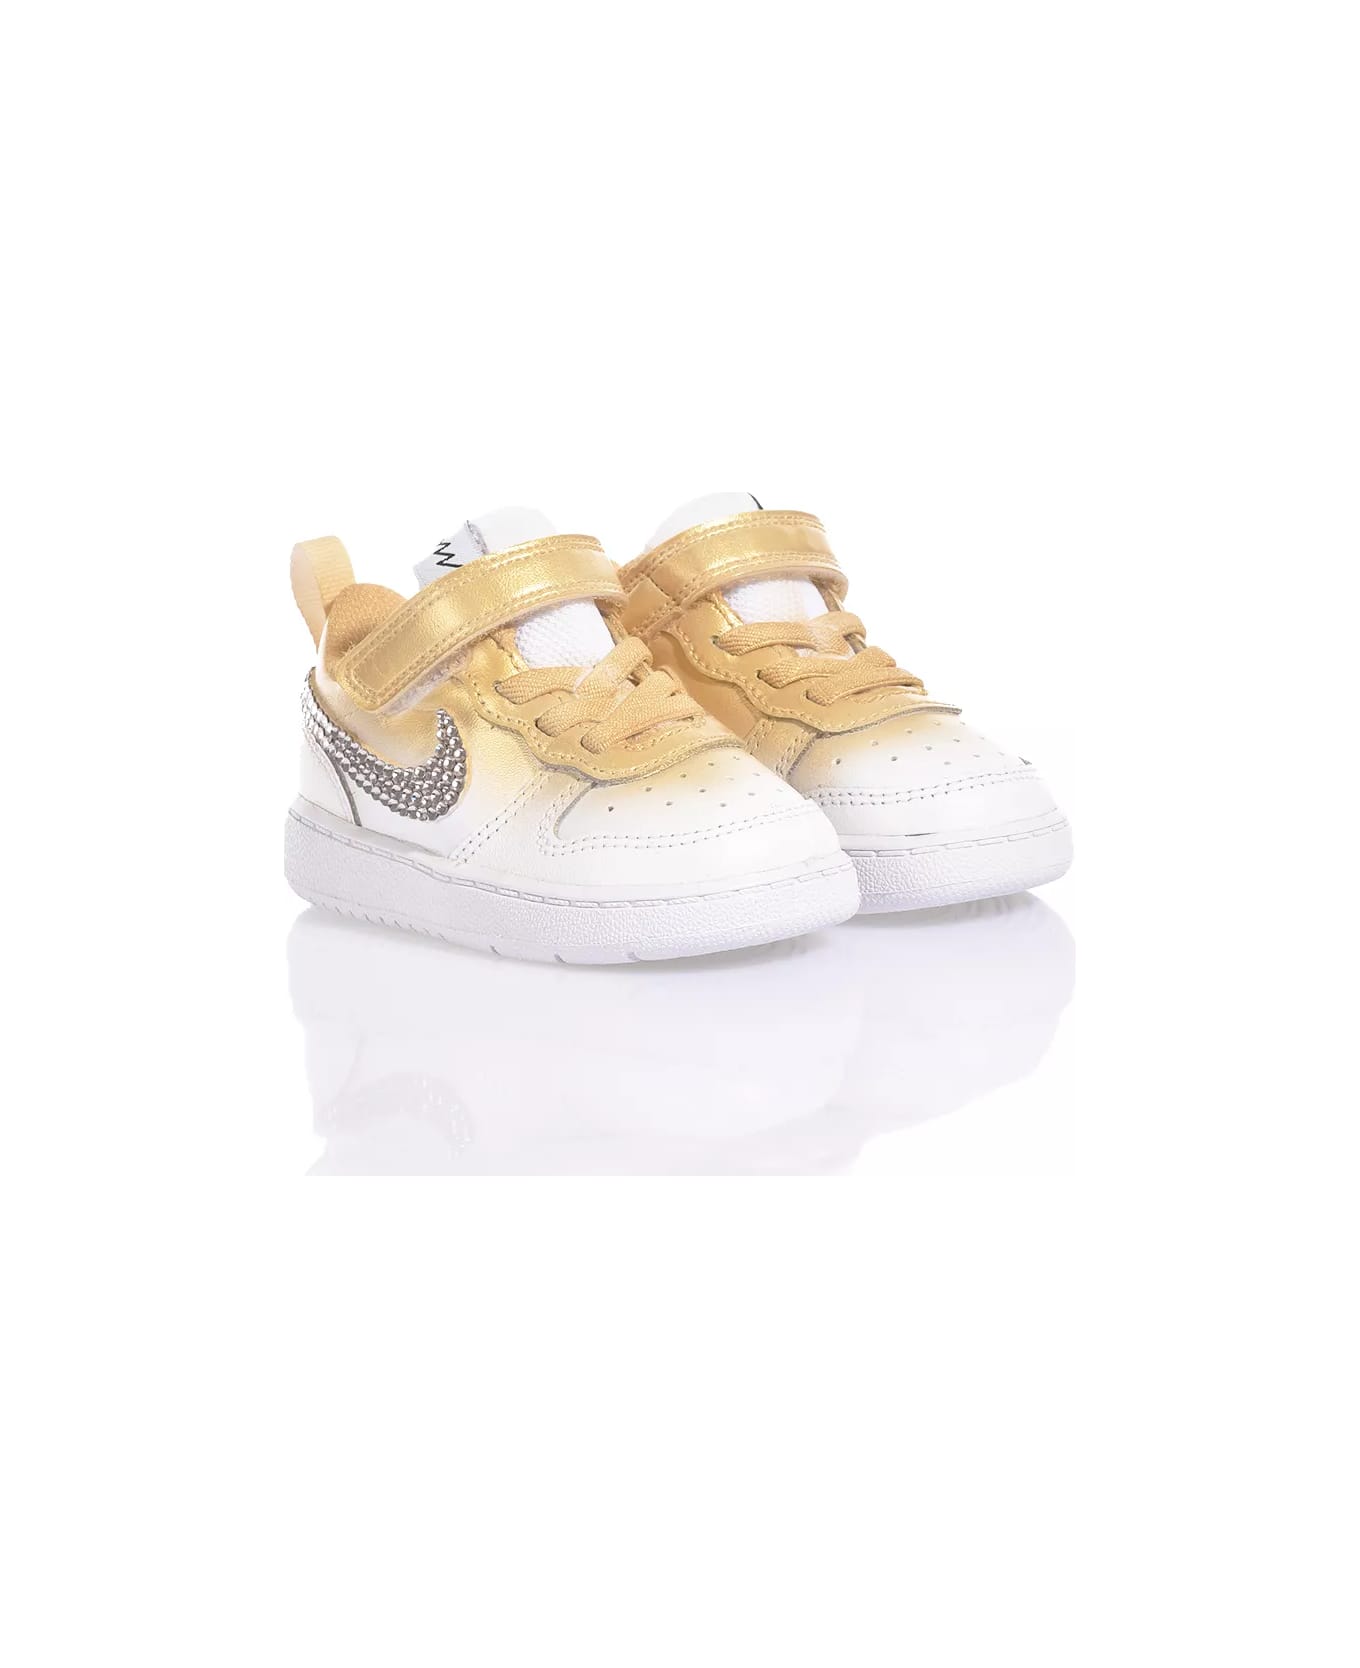 Mimanera Nike Baby Shade Gold Custom シューズ